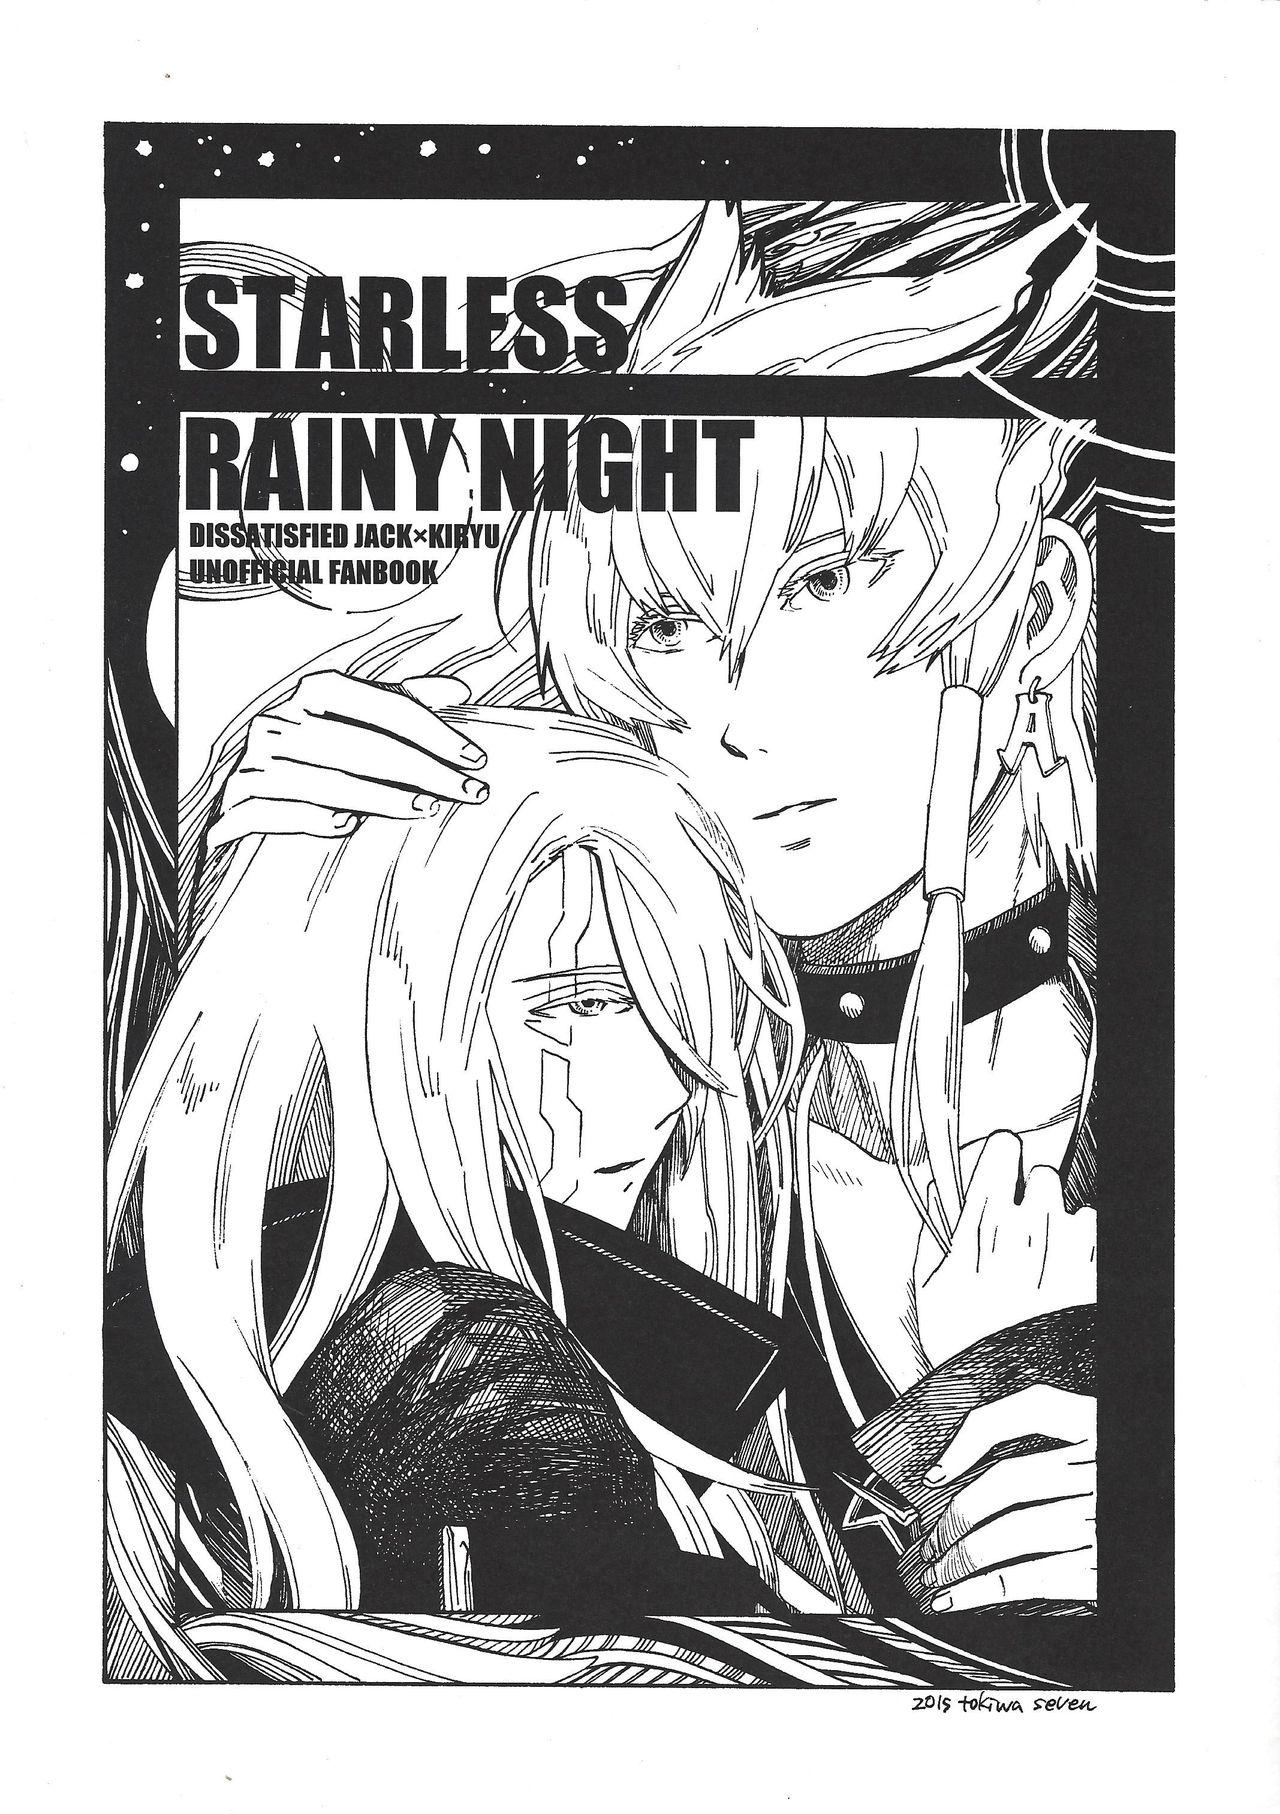 STARLESS RAINY NIGHT 0